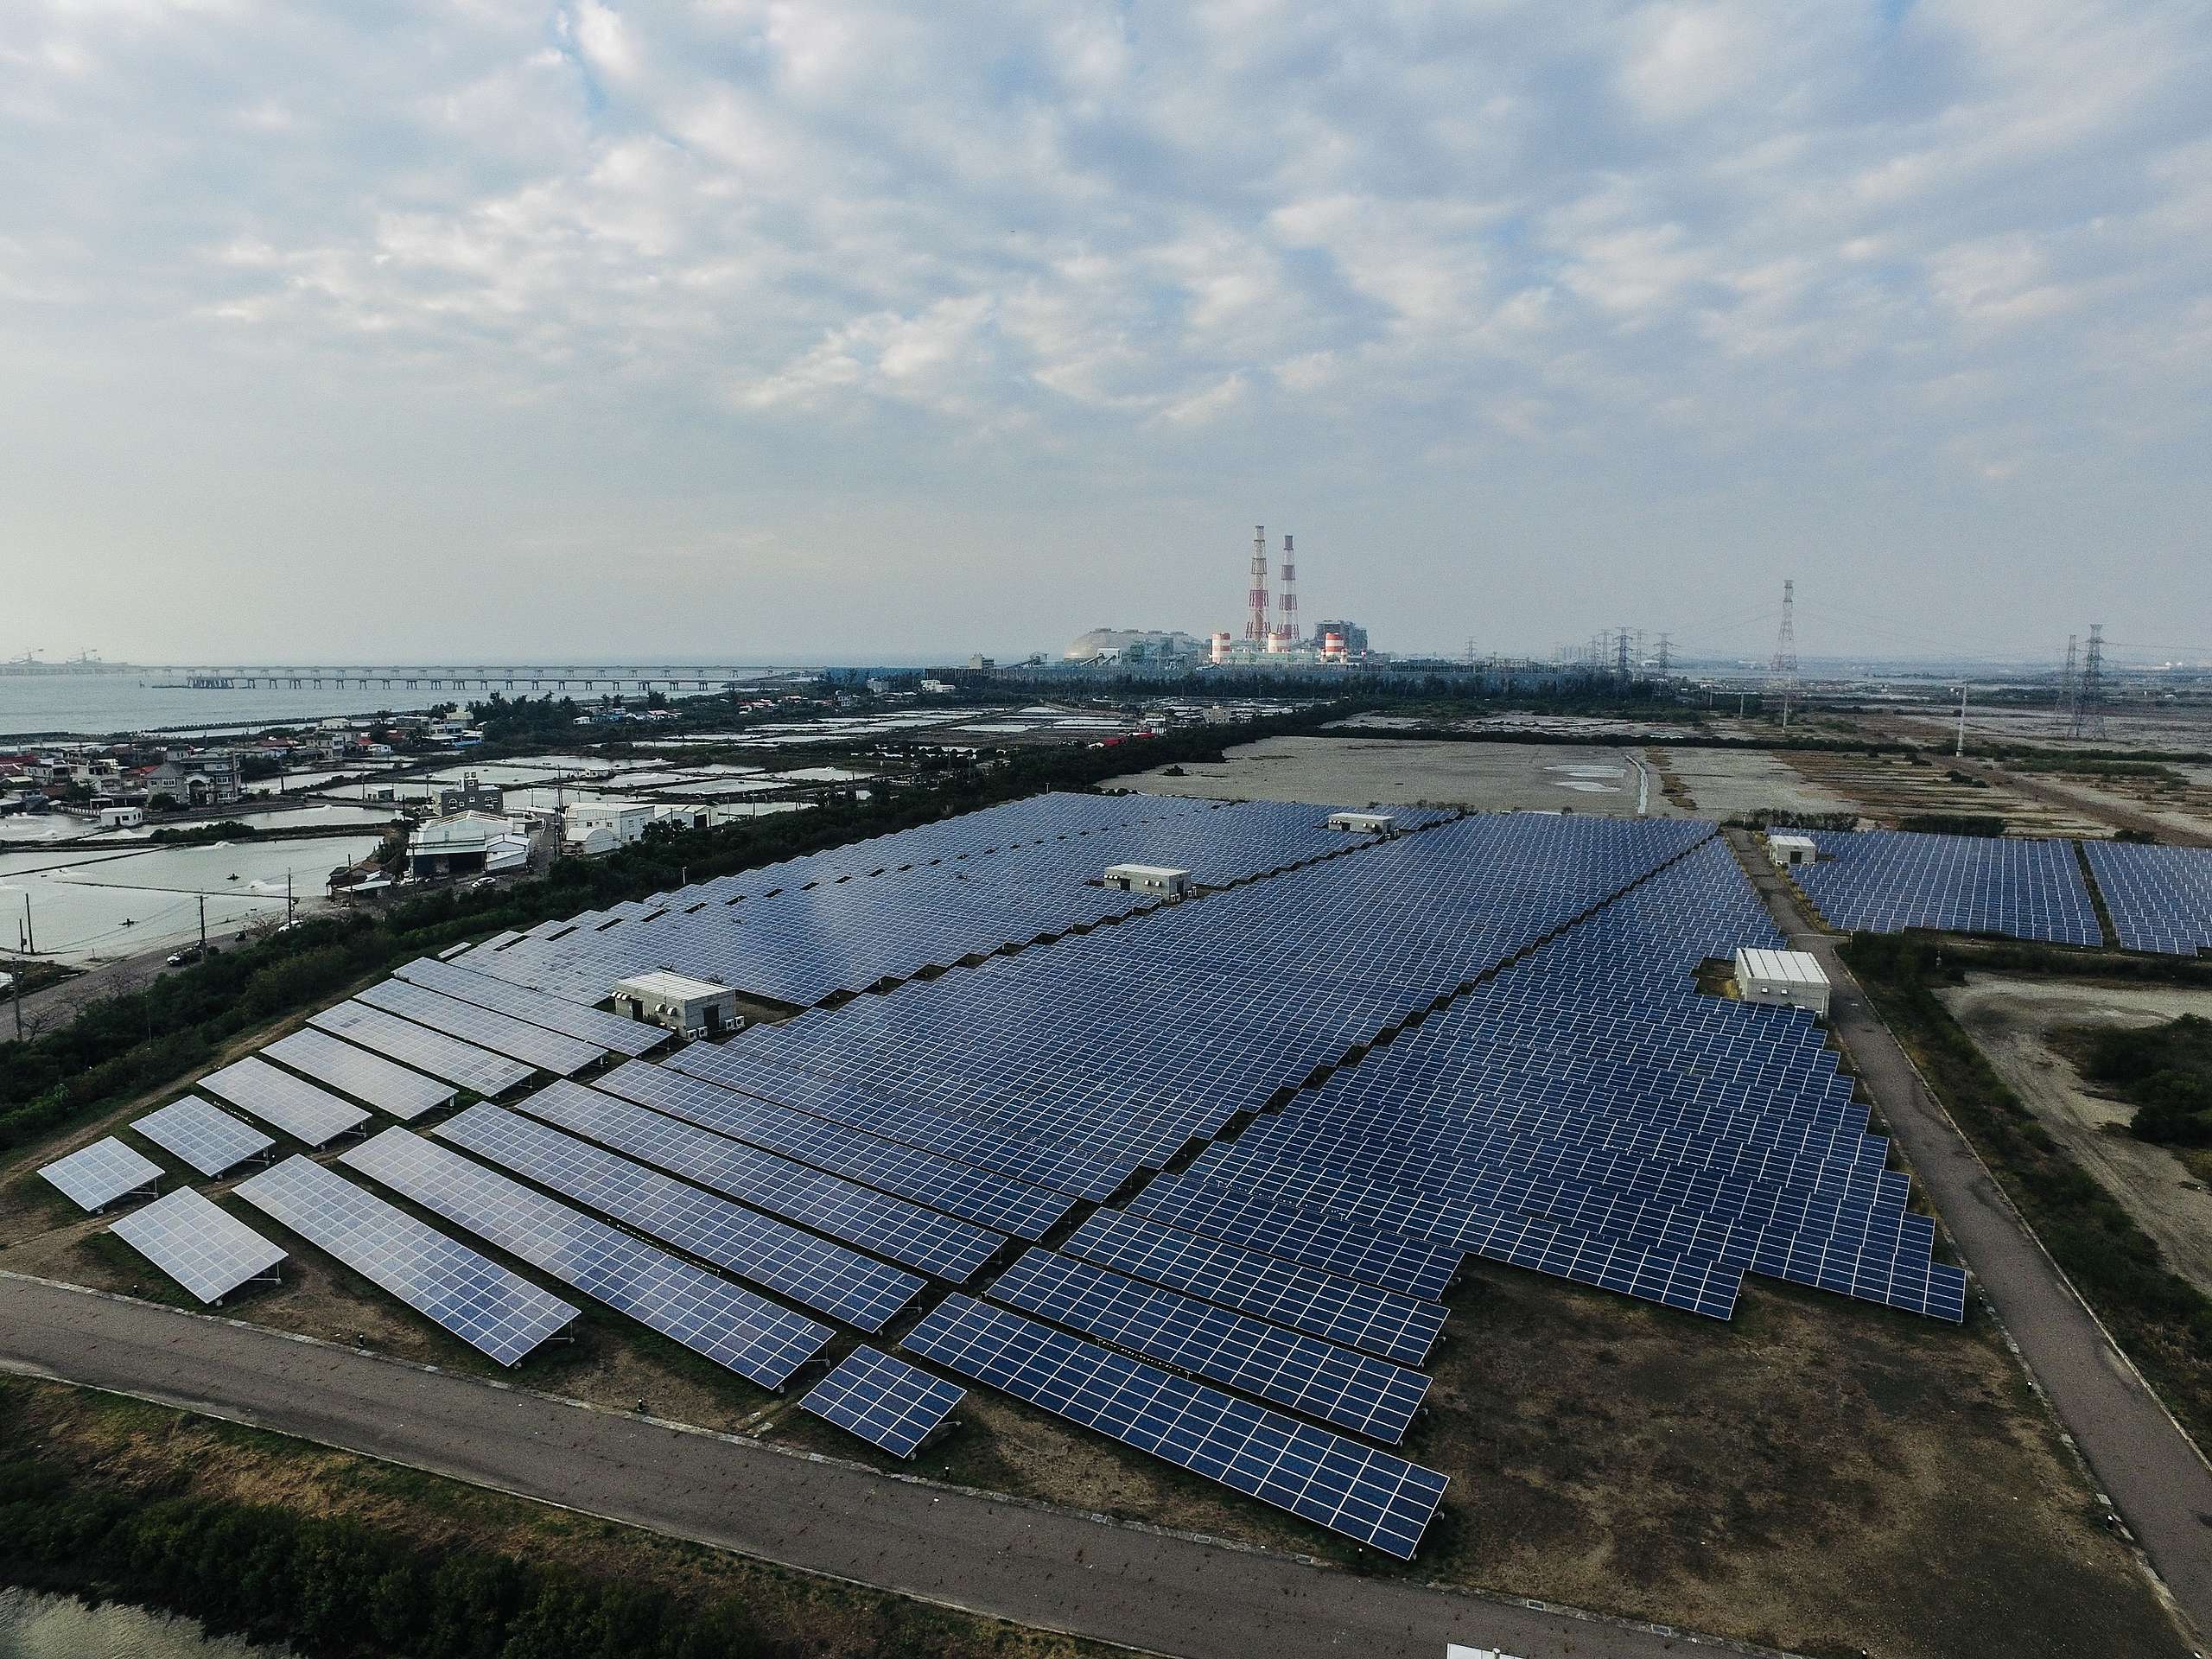 臺灣目前的再生能源發展比例及減碳措施過於遲緩，必須加緊腳步才能應對全球淨零趨勢。© Yung Jen Chen / Greenpeace